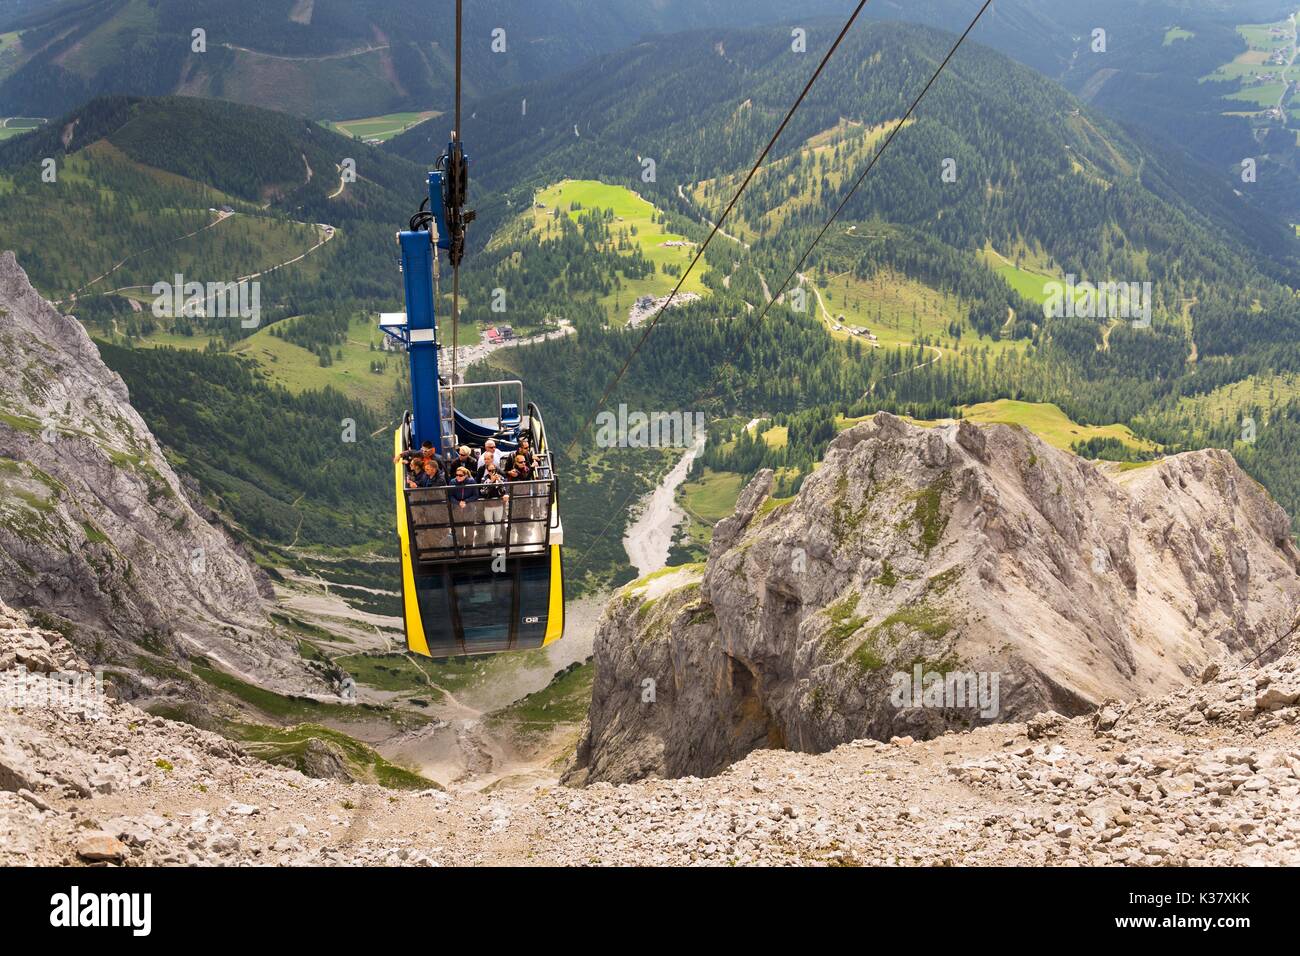 RAMSAU AM DACHSTEIN, Österreich - 17. August: Touristen auf der Gondel in der Bergstation der Dachstein Seilbahn am 17. August 2017 in Schladming Stockfoto